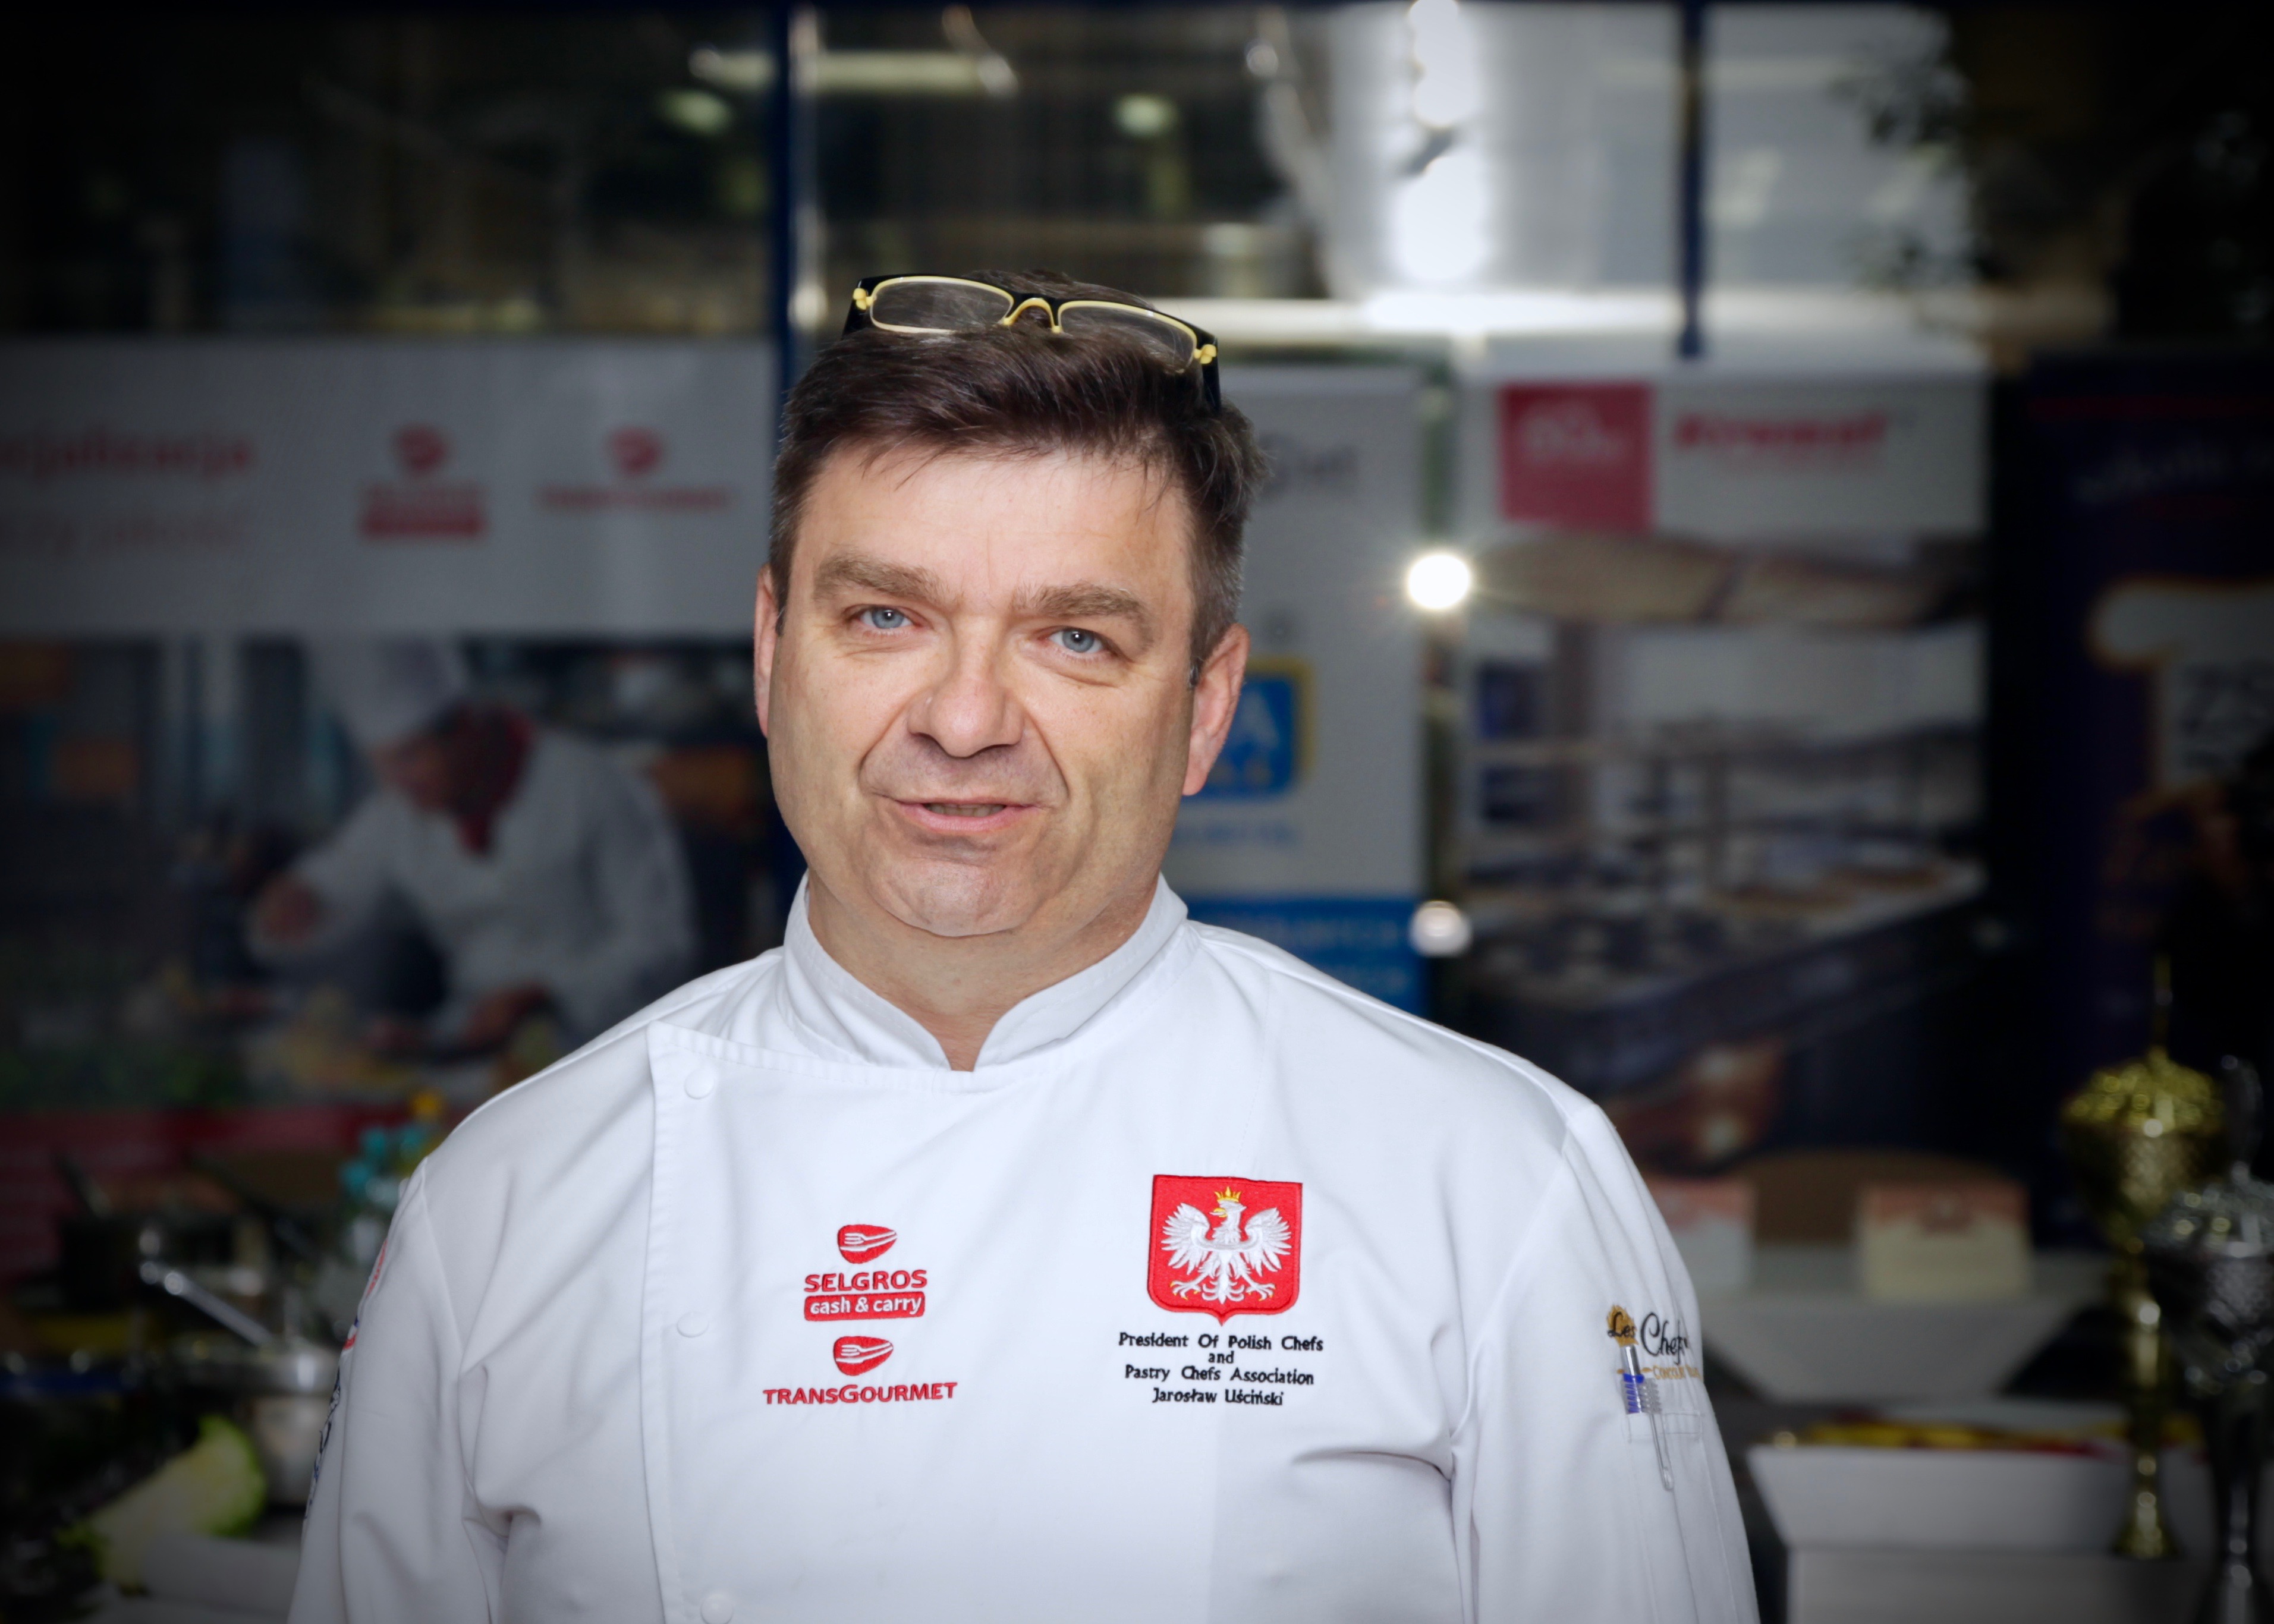 Jarek Uściński: Czy gotowanie wege to kompromitacja dla kucharza?